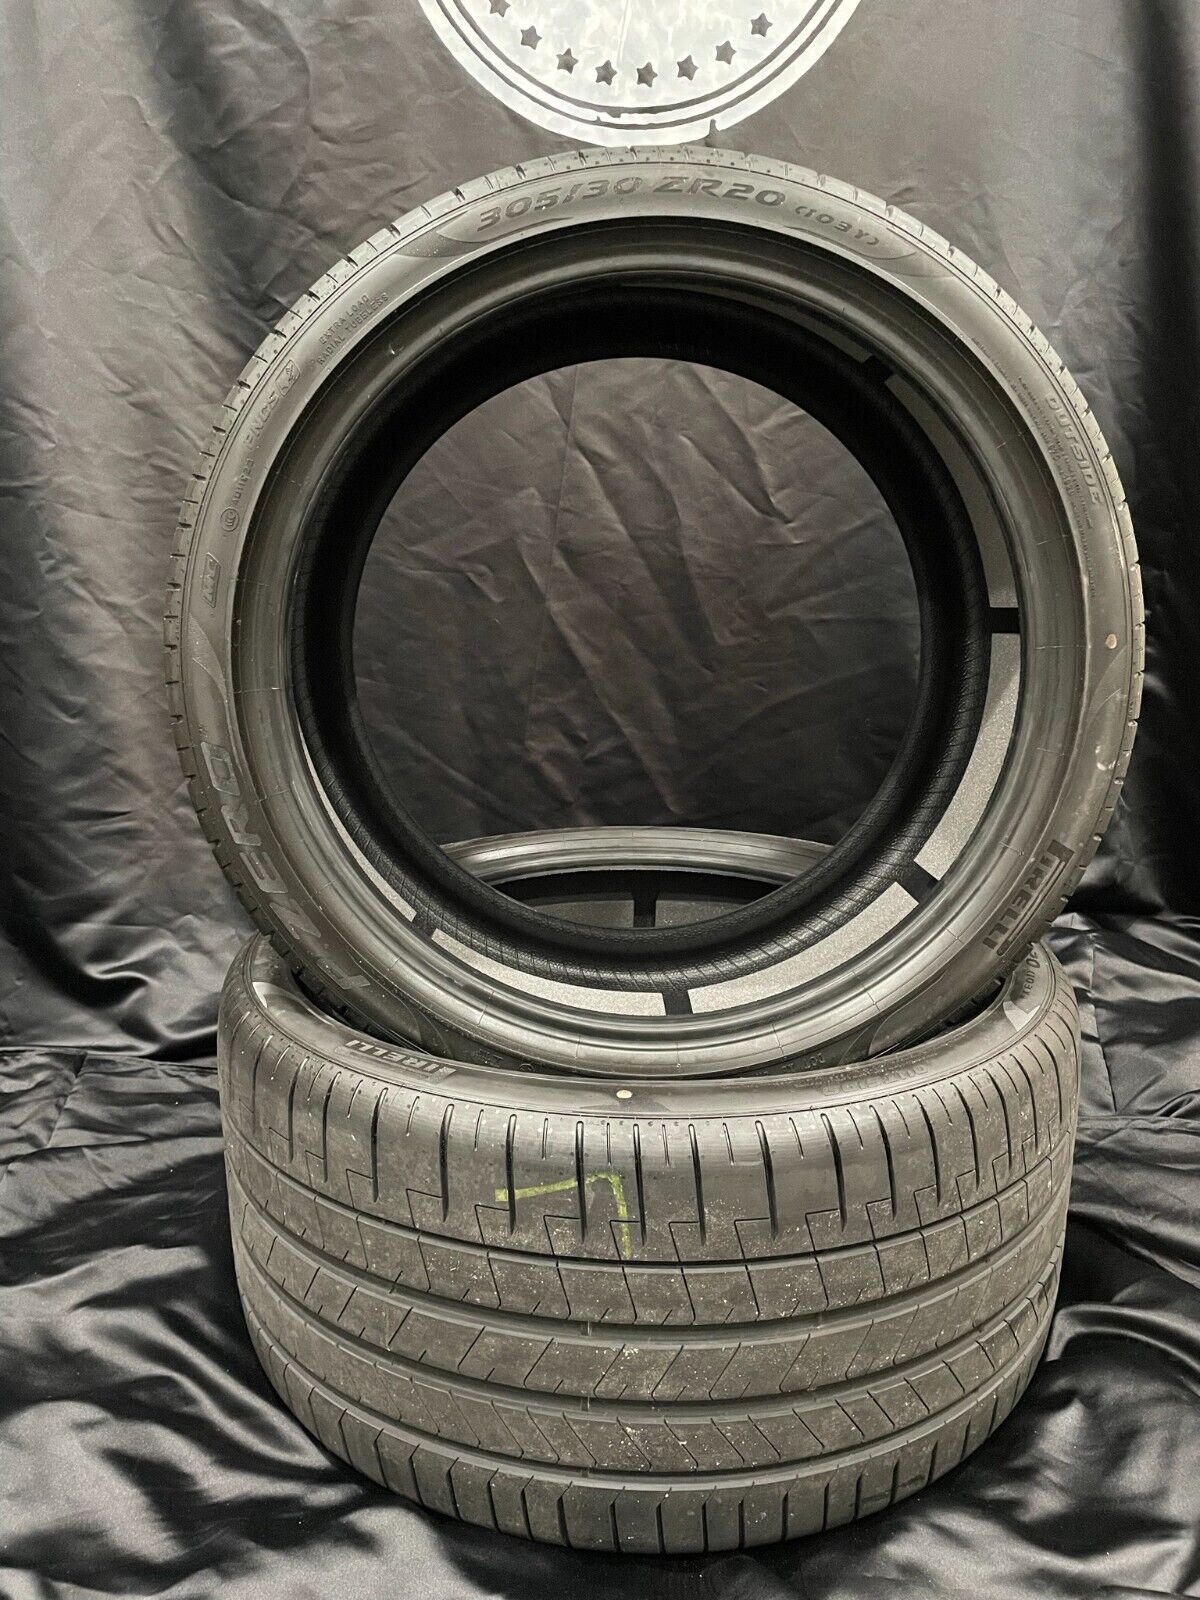 McLaren 720s Tires 